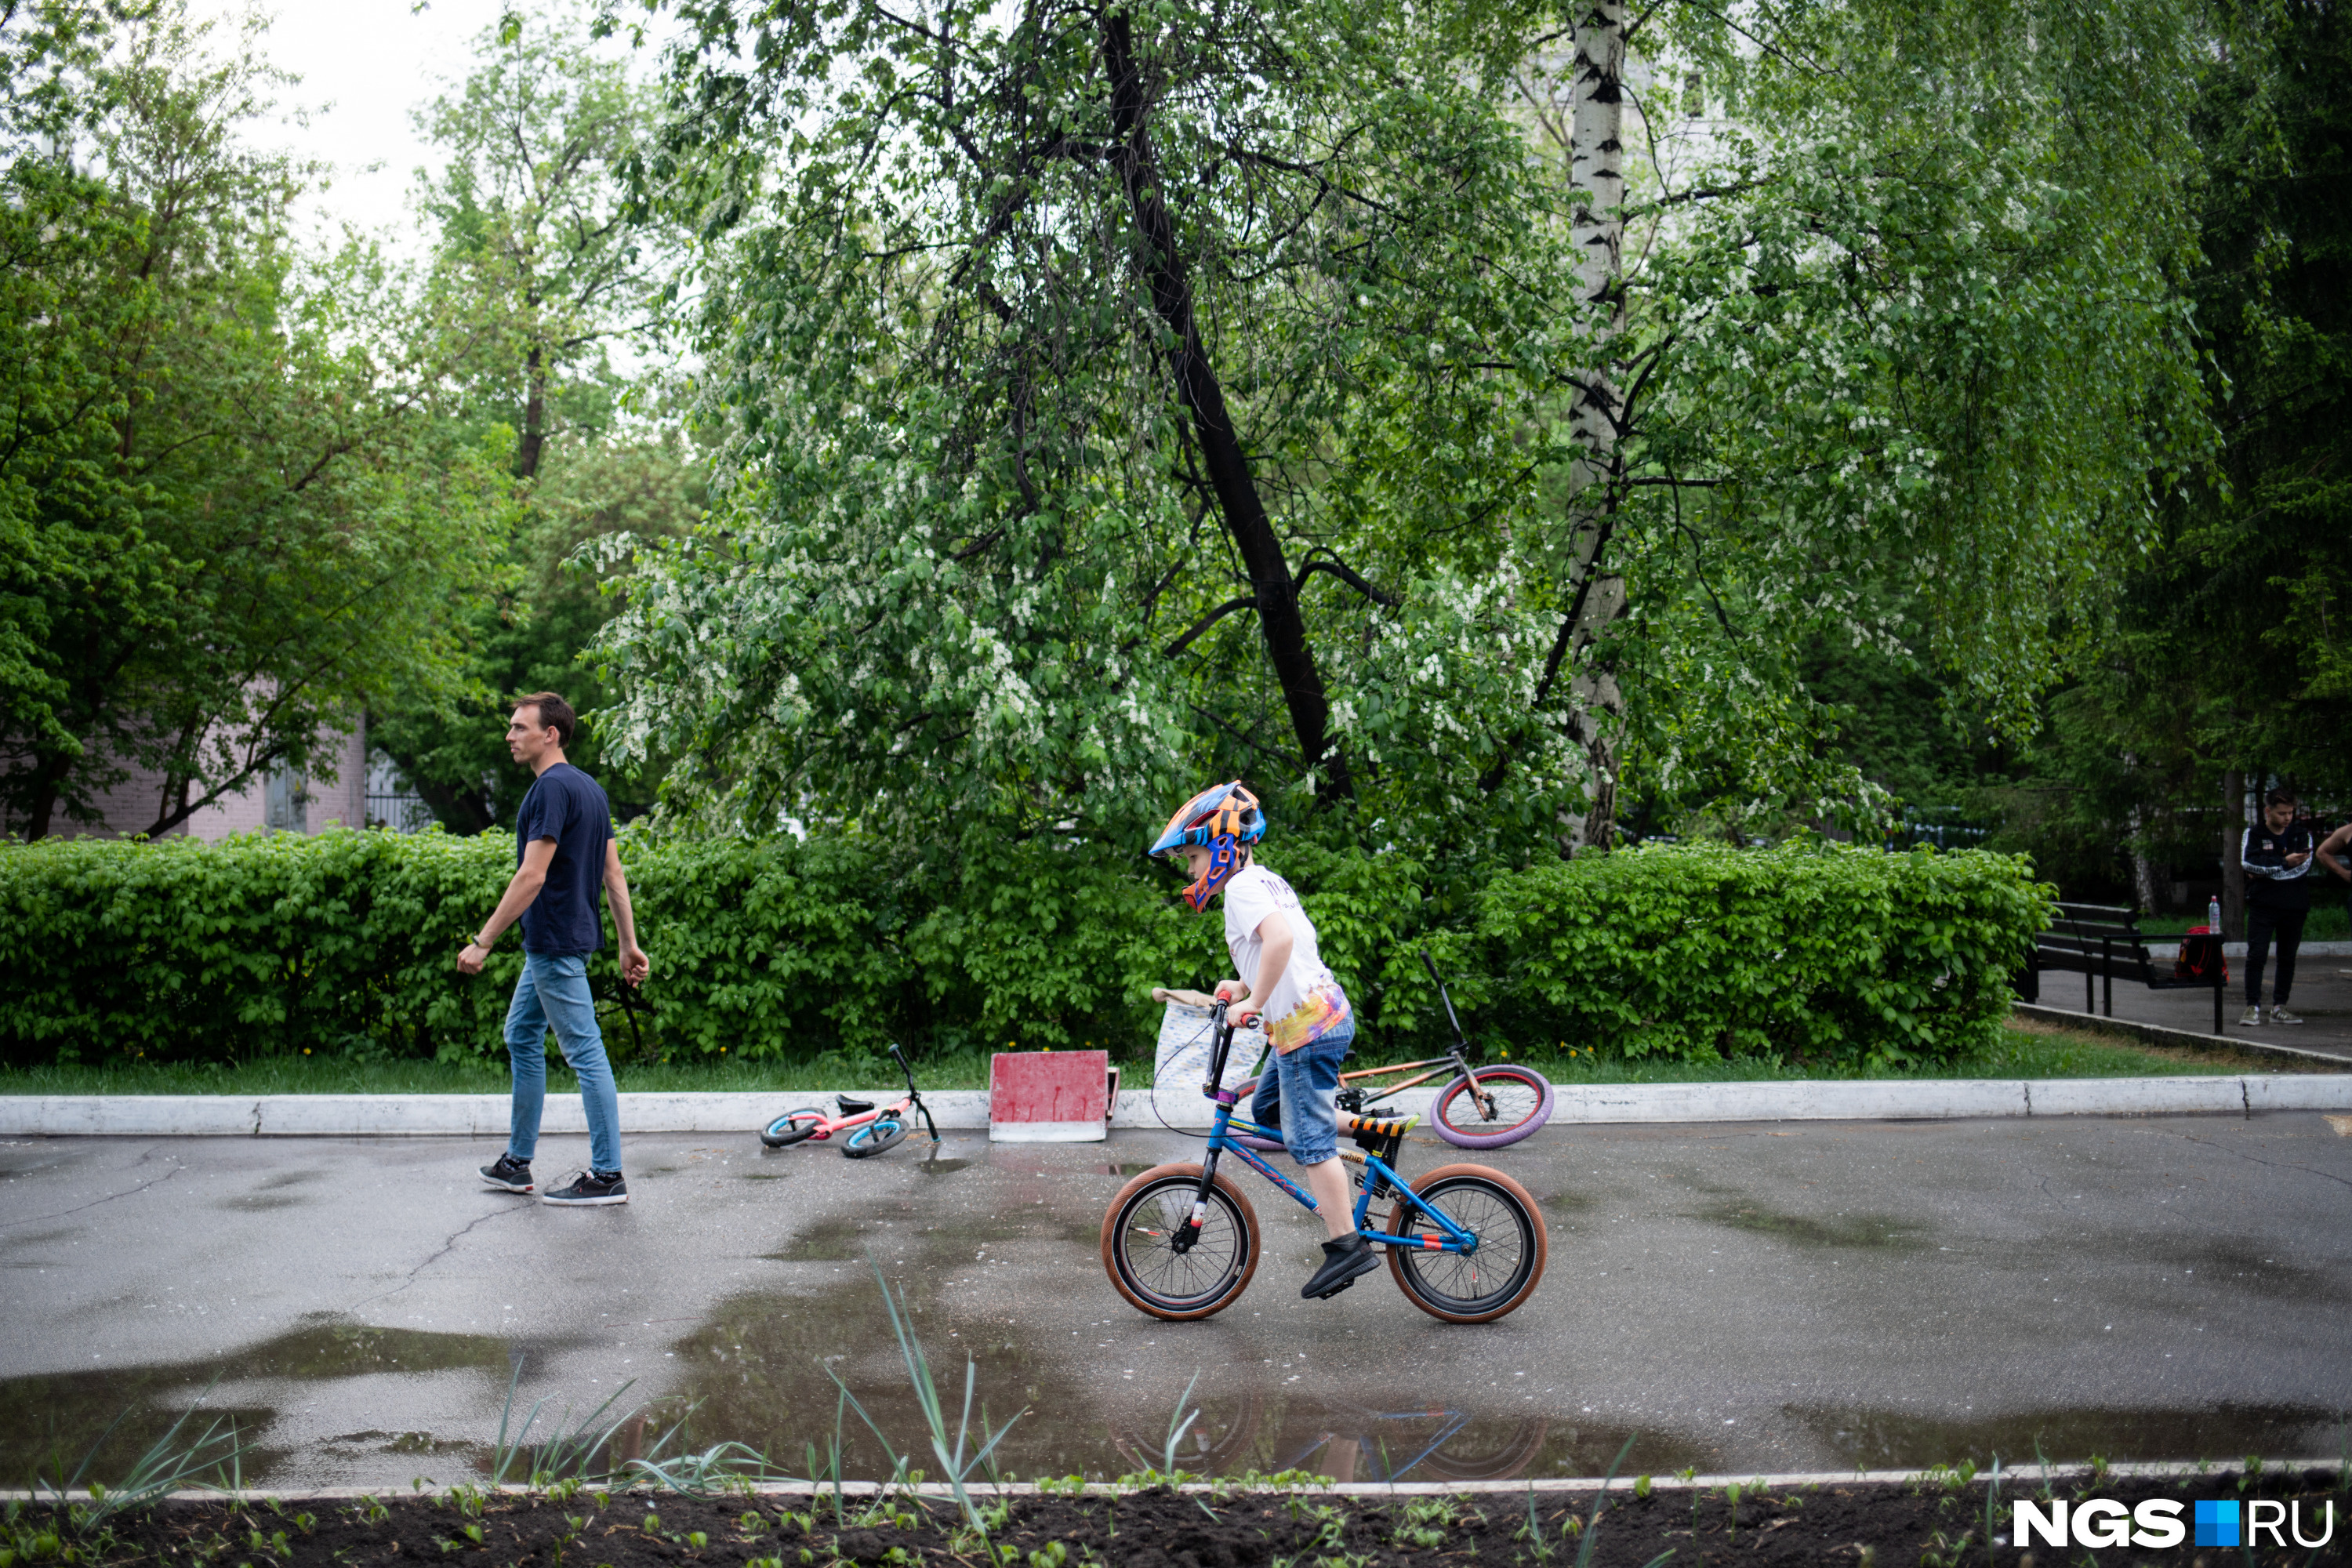 Дети в парке катаются по дорожкам на велосипедах